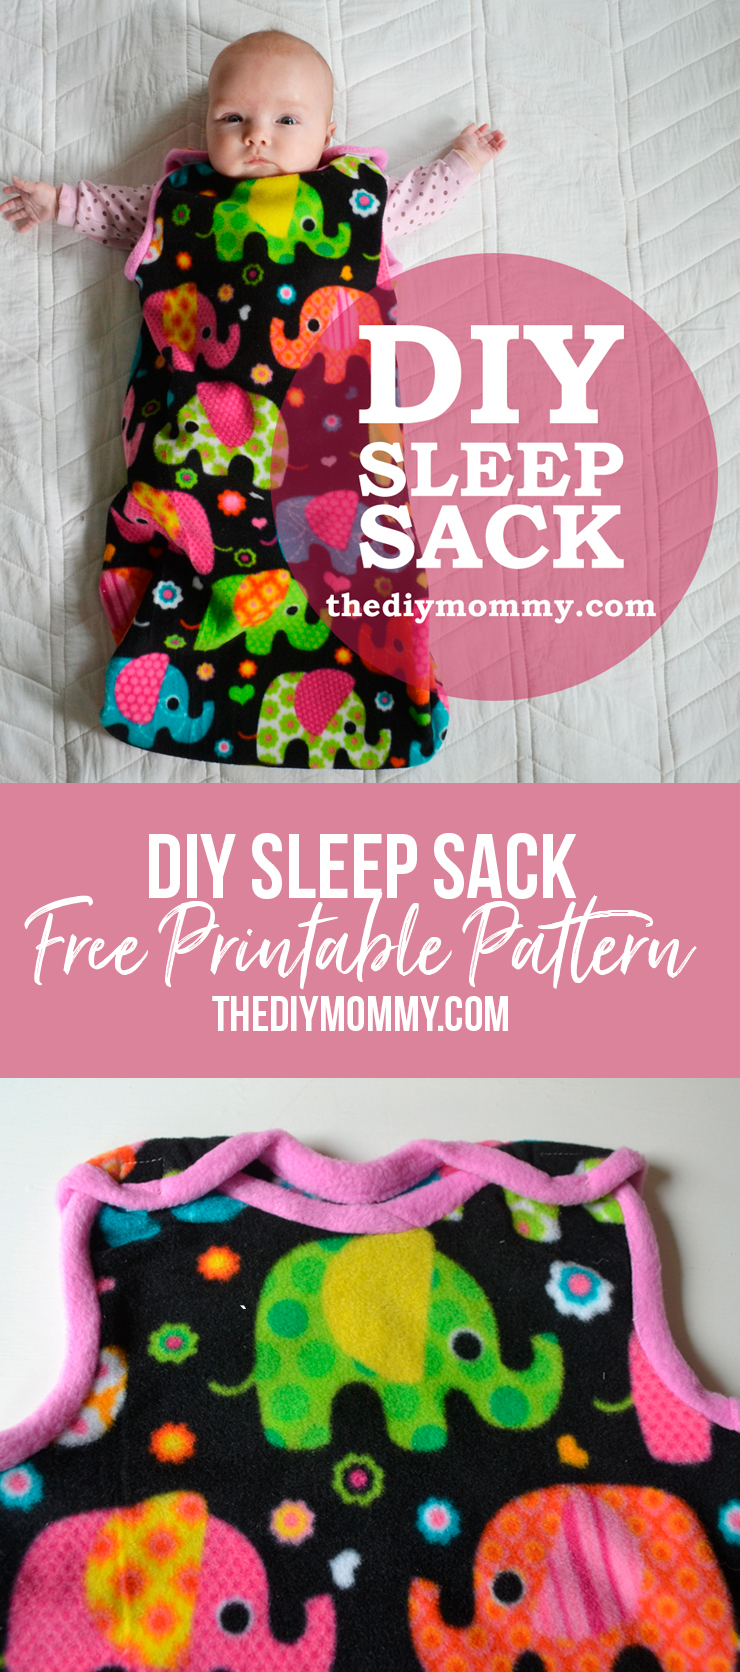 Sew an Easy Baby Sleep Sack | The DIY Mommy - Sew an Easy Baby Sleep Sack | The DIY Mommy -   16 diy Baby naaien ideas